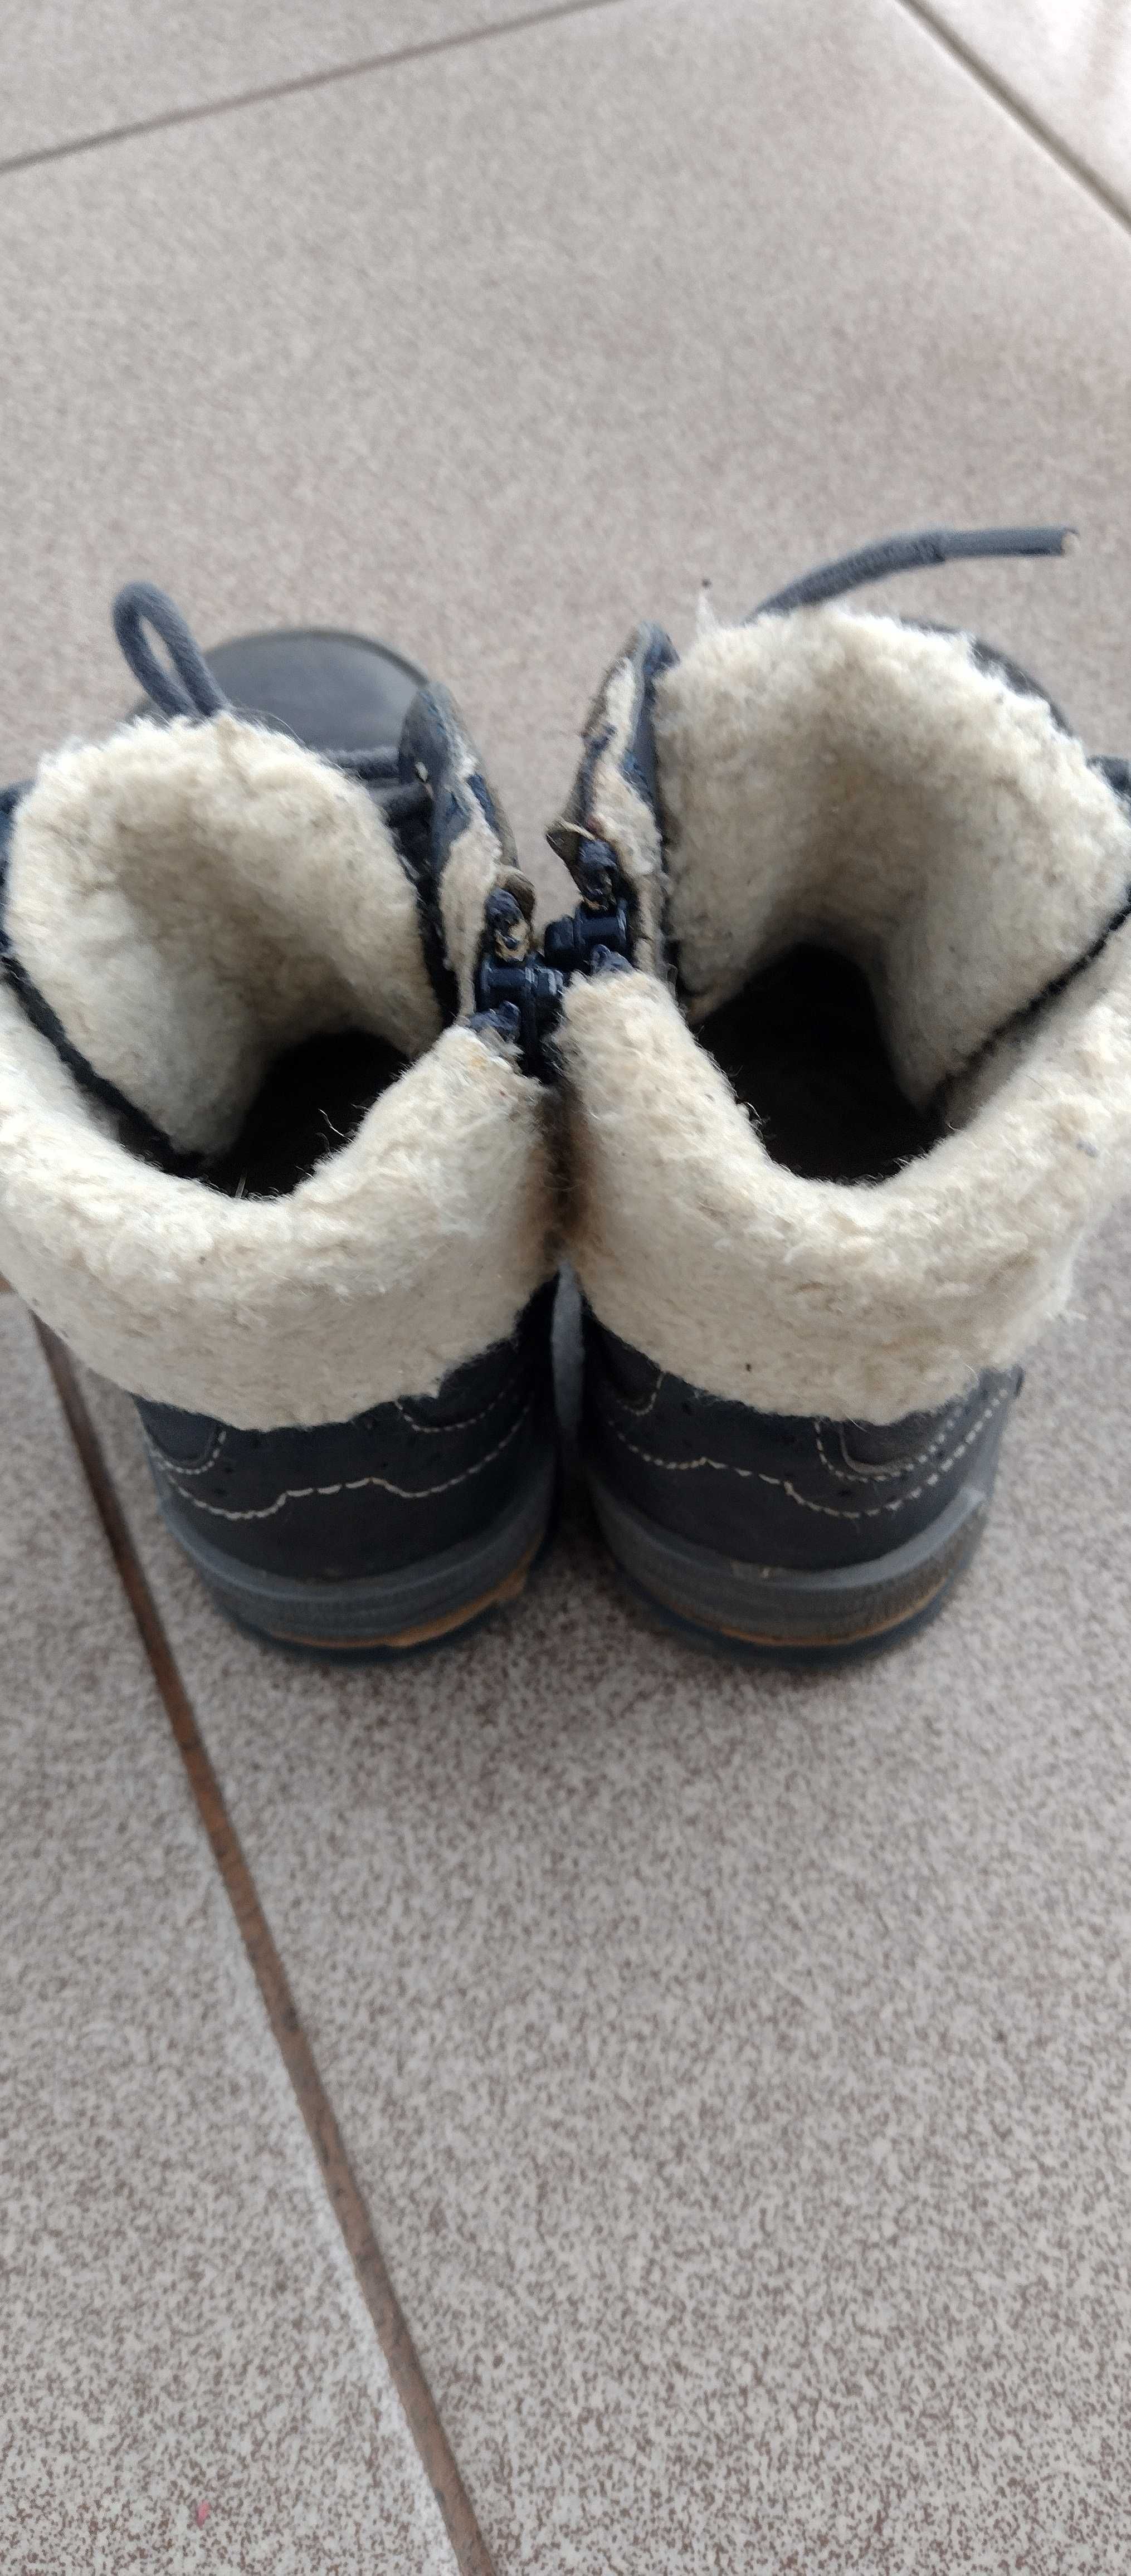 Buty zimowe LASOCKI, 25, długość wkładki wewnętrznej 15,9-16 cm